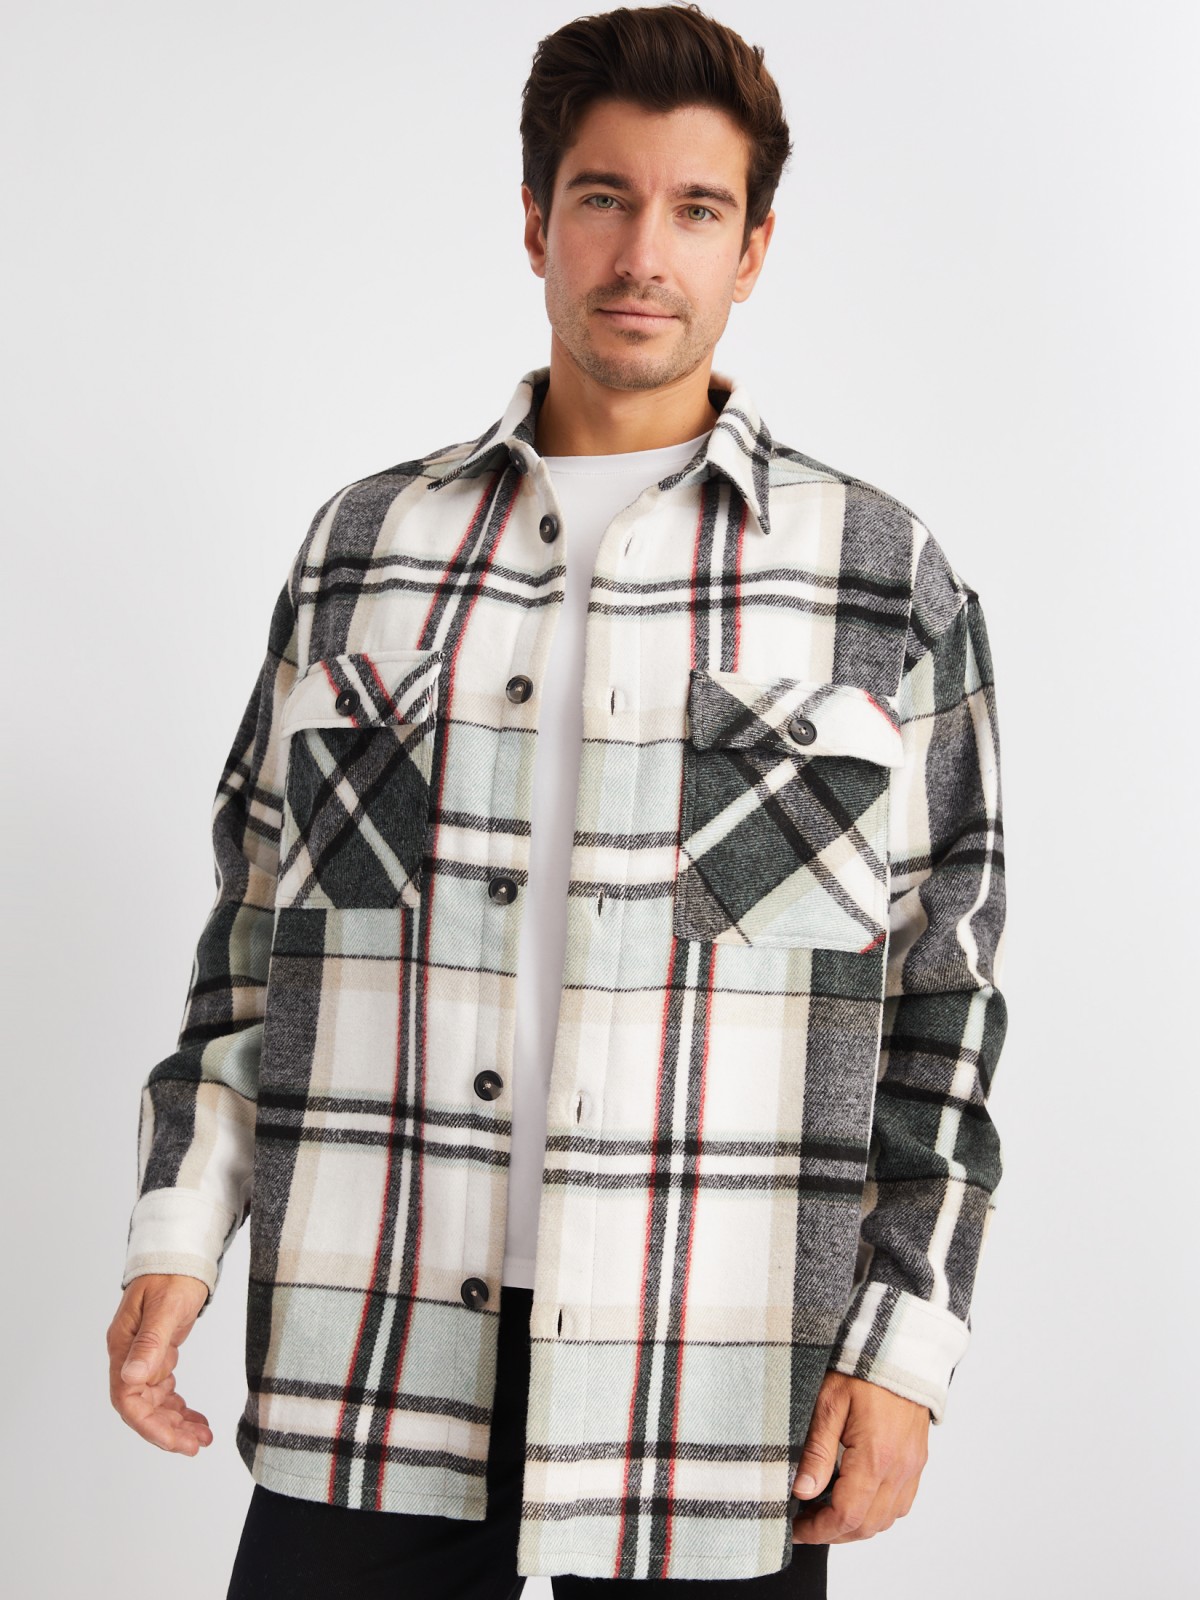 Куртка-рубашка из хлопка с длинным рукавом и узором в клетку zolla 014122159153, цвет мятный, размер S - фото 4